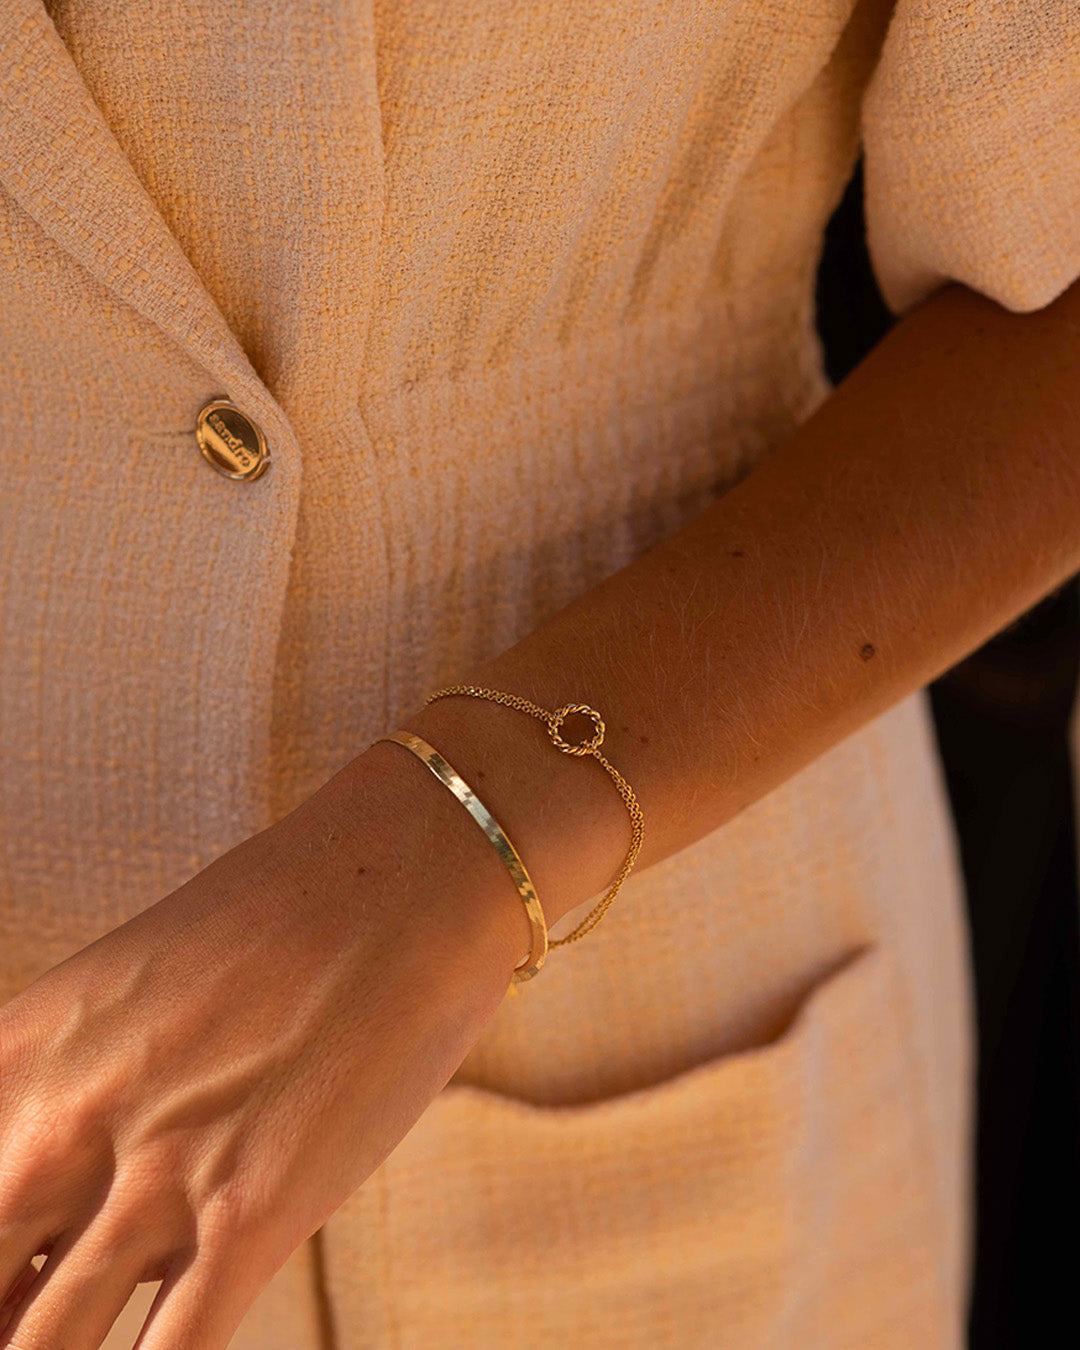 Association de bracelet en plaqué or 3 microns composée d'un bracelet en chaîne plate, et d'un bracelet fin en chaîne double avec un anneau torsadé fabriqués en France.